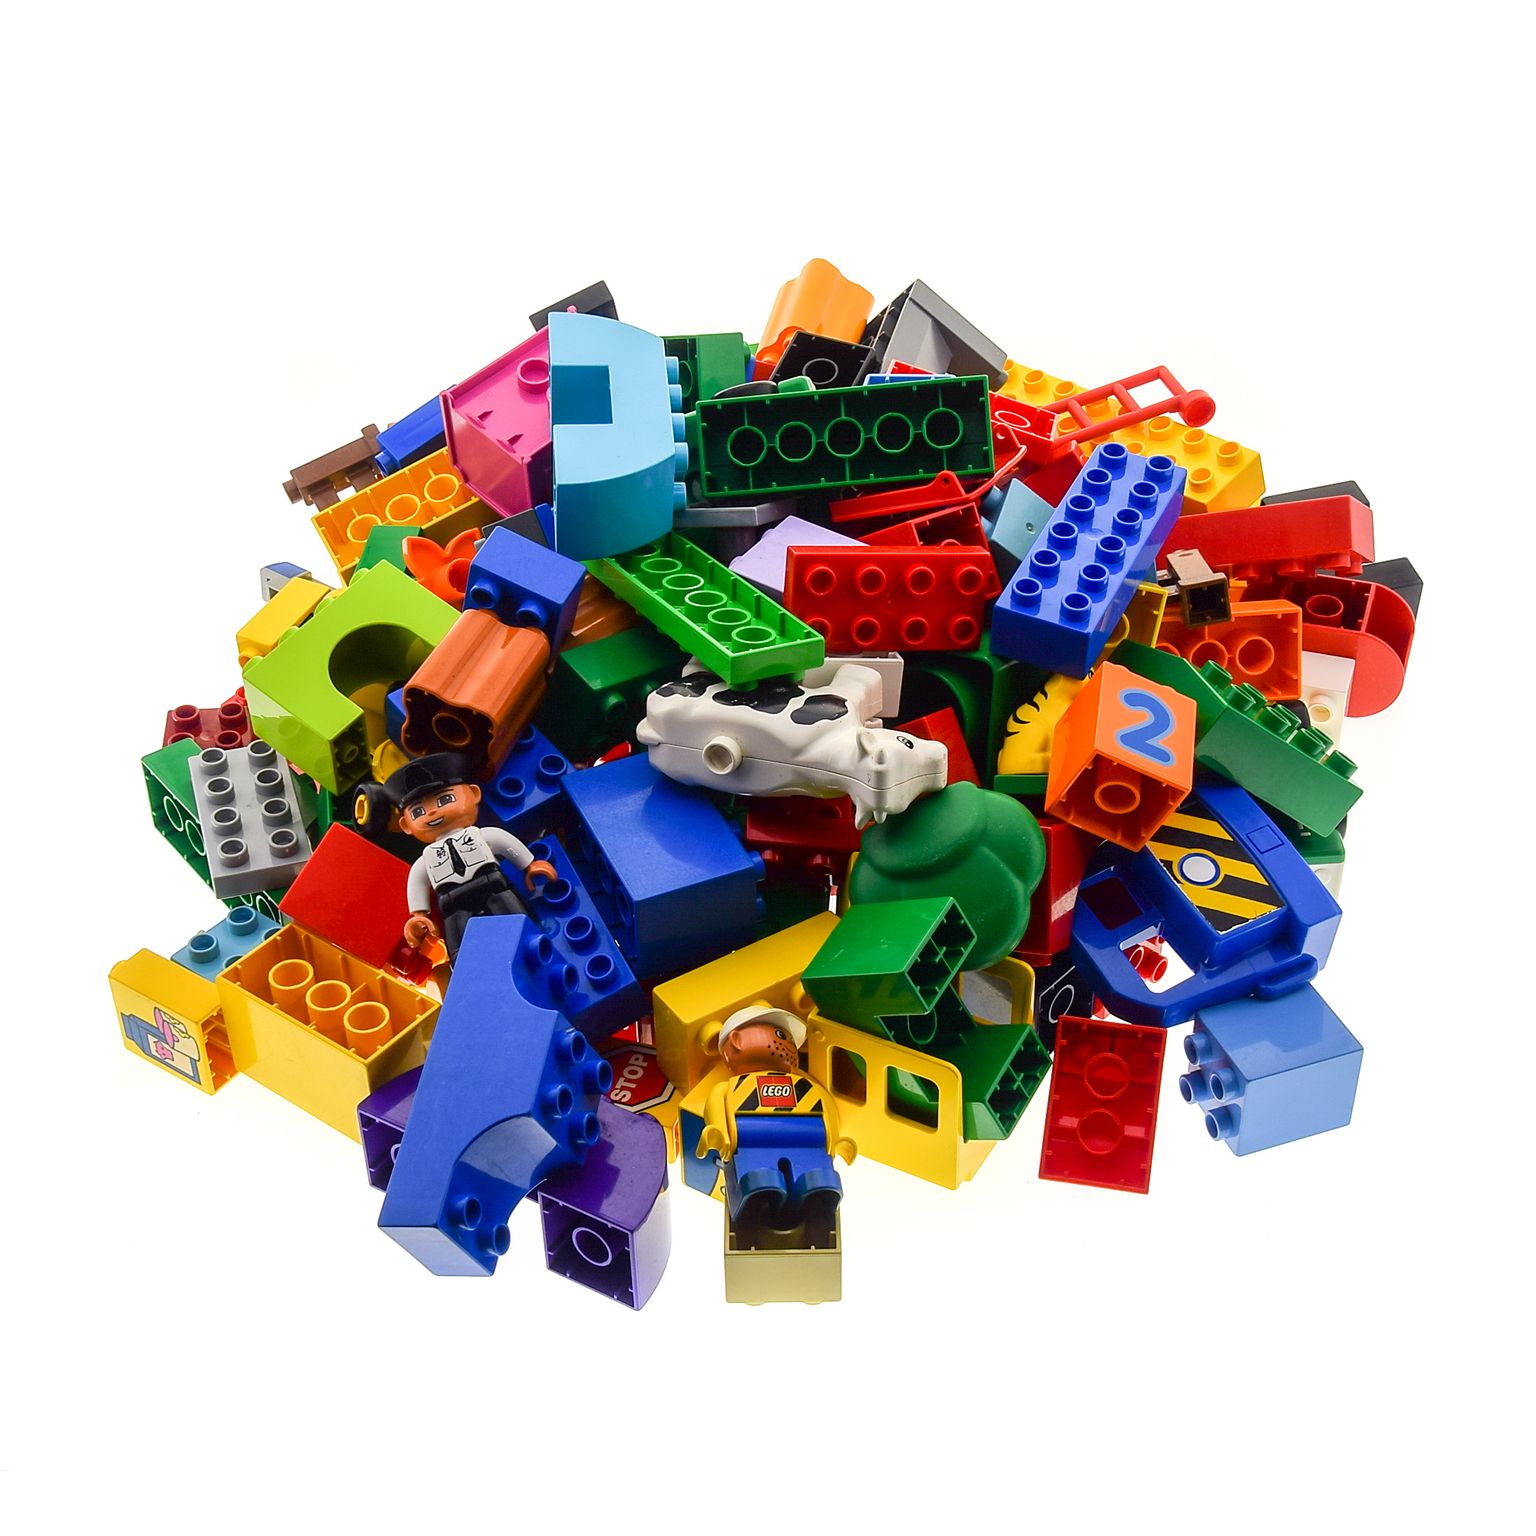 Lego Duplo 1 Kg Häuser Wände Bausteine Steine Figuren Auto Tier Bausteine 4 